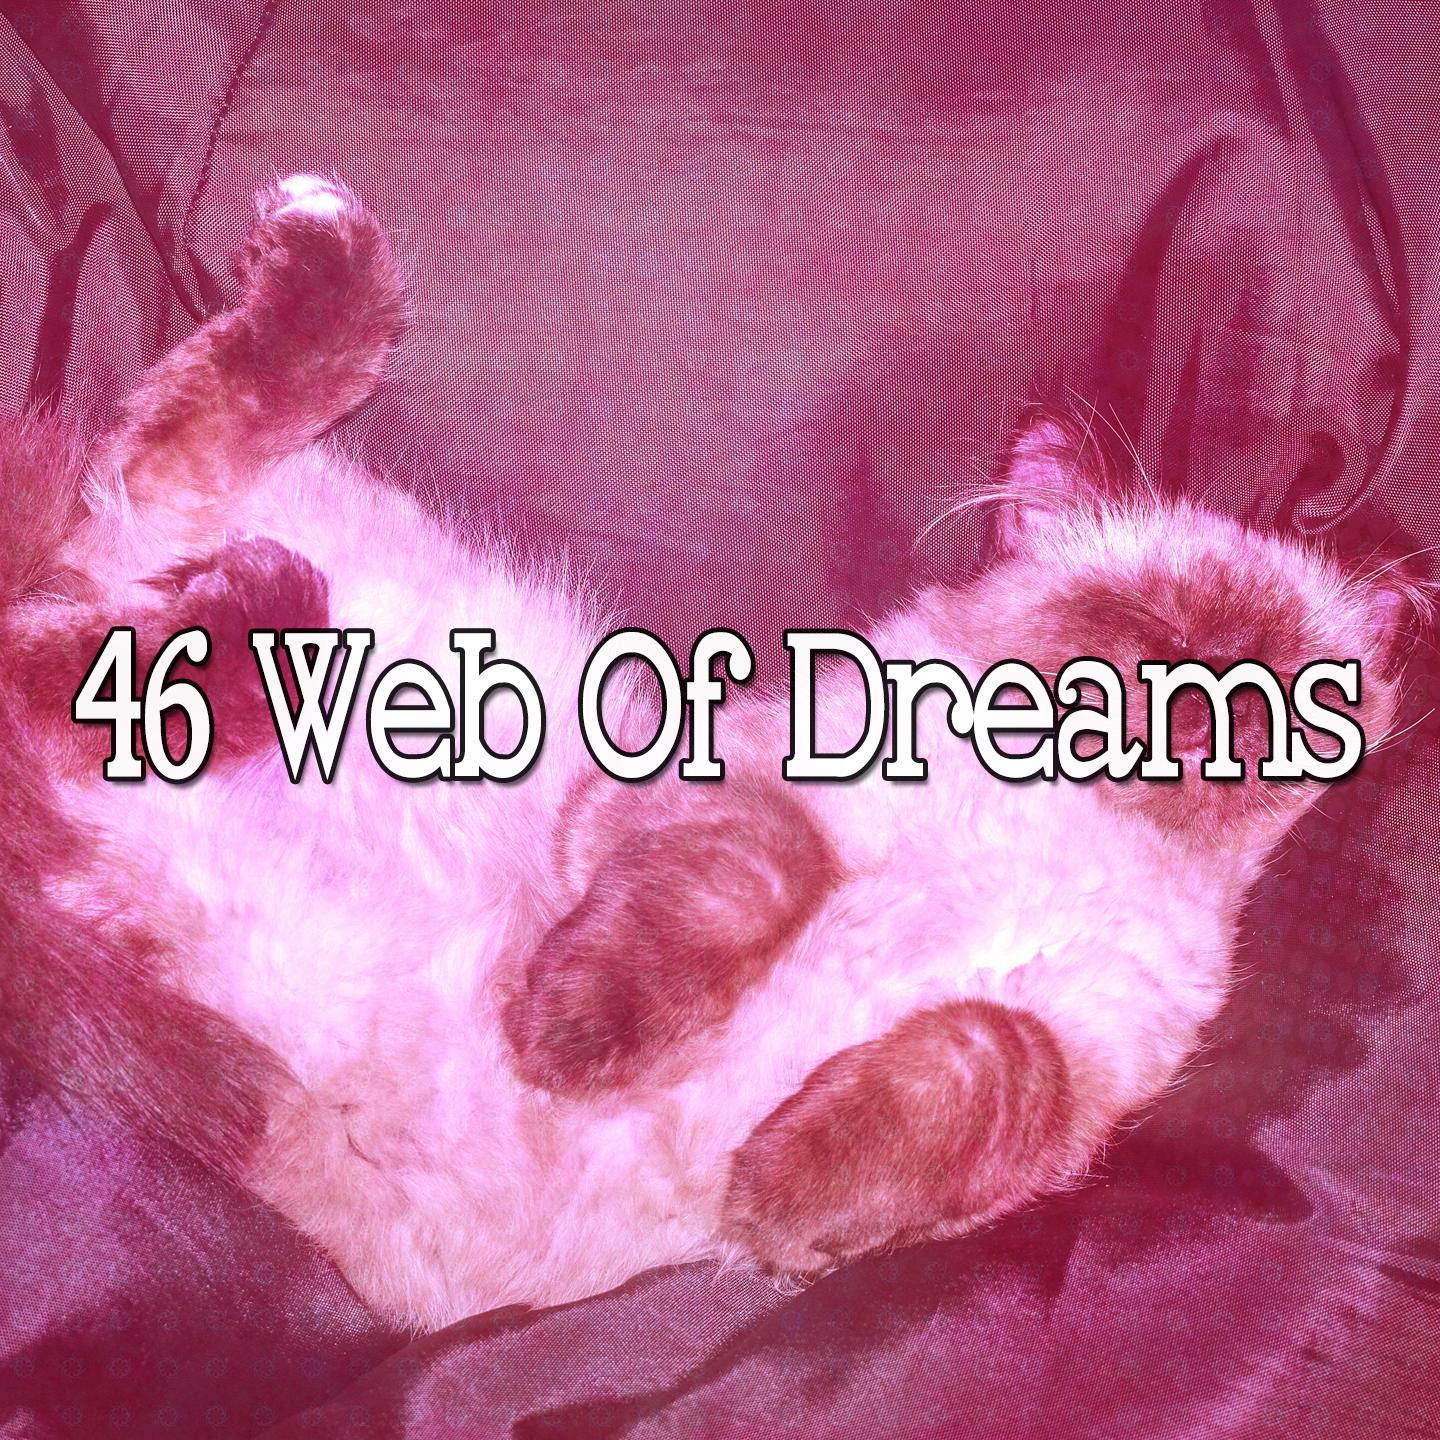 46 Web of Dreams